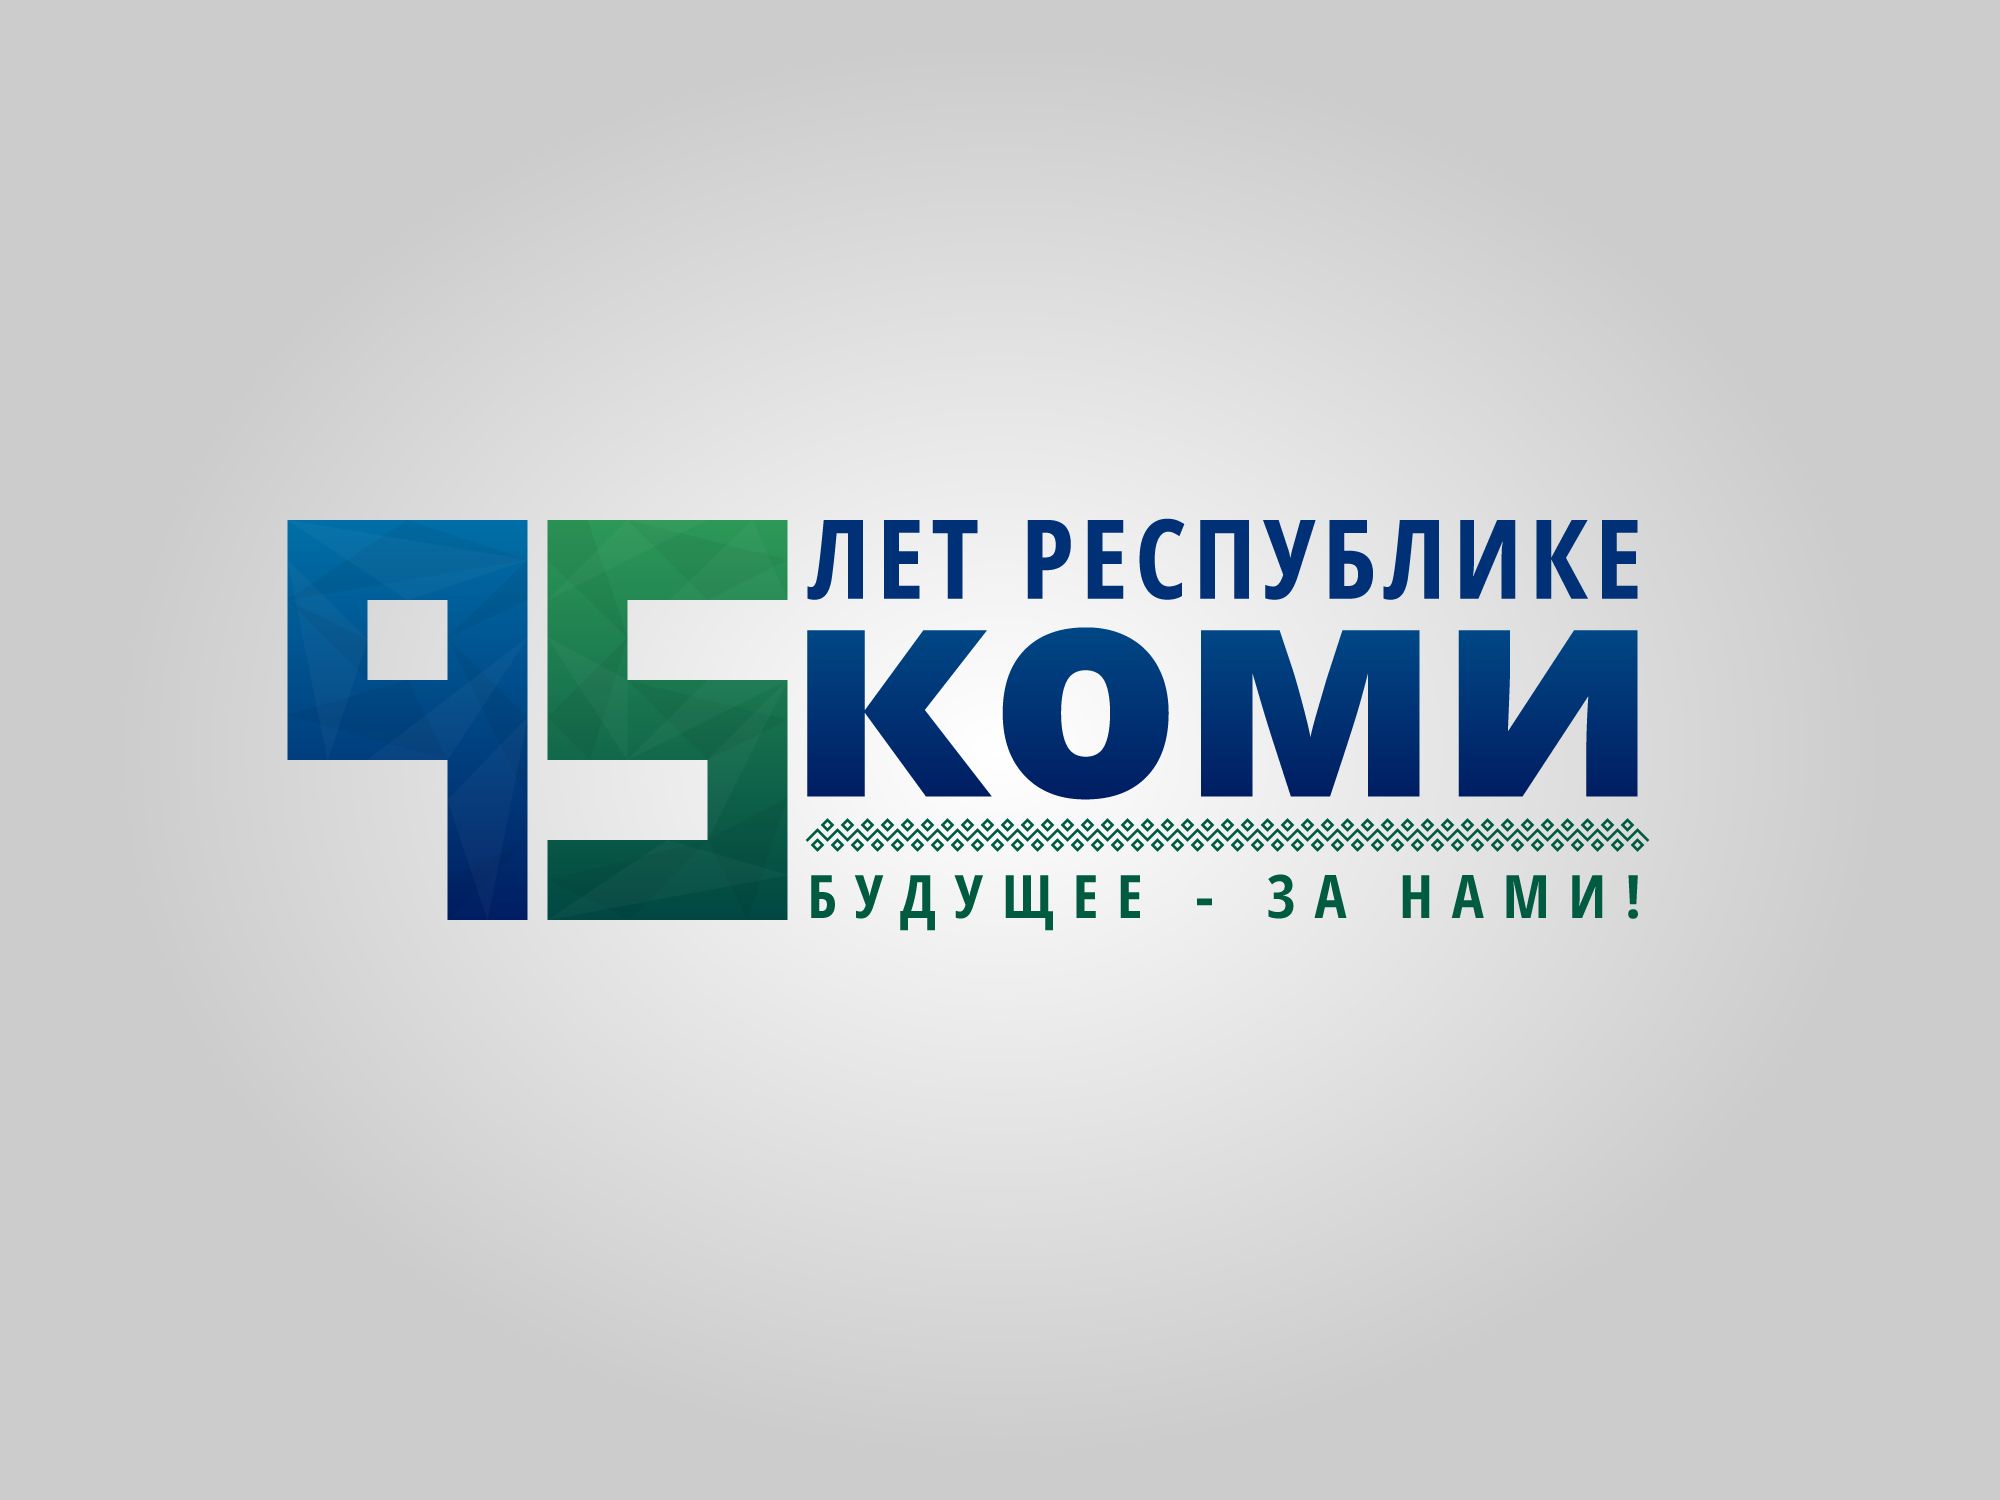 Лого и фирменный стиль для 95 лет Республике Коми  - дизайнер timgouves